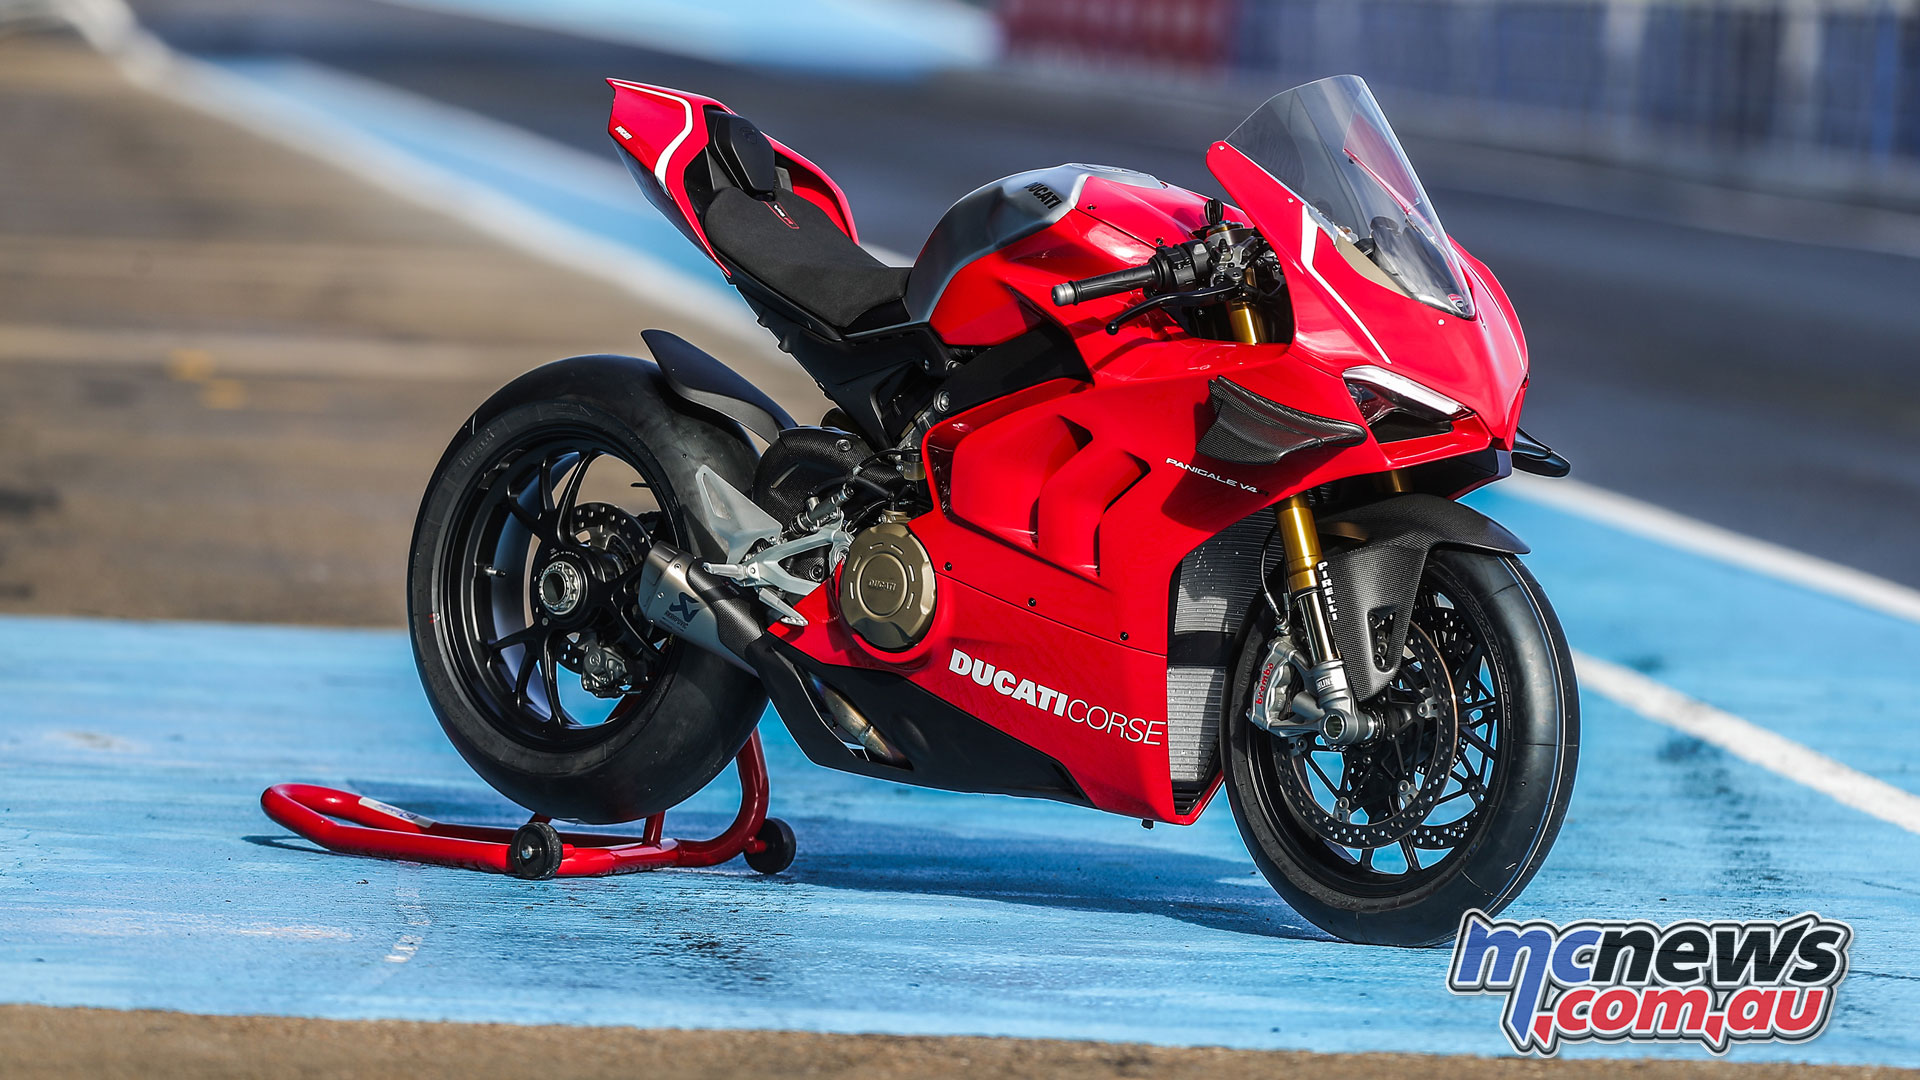 2019 Ducati Panigale V4 R 998cc racer More tech details